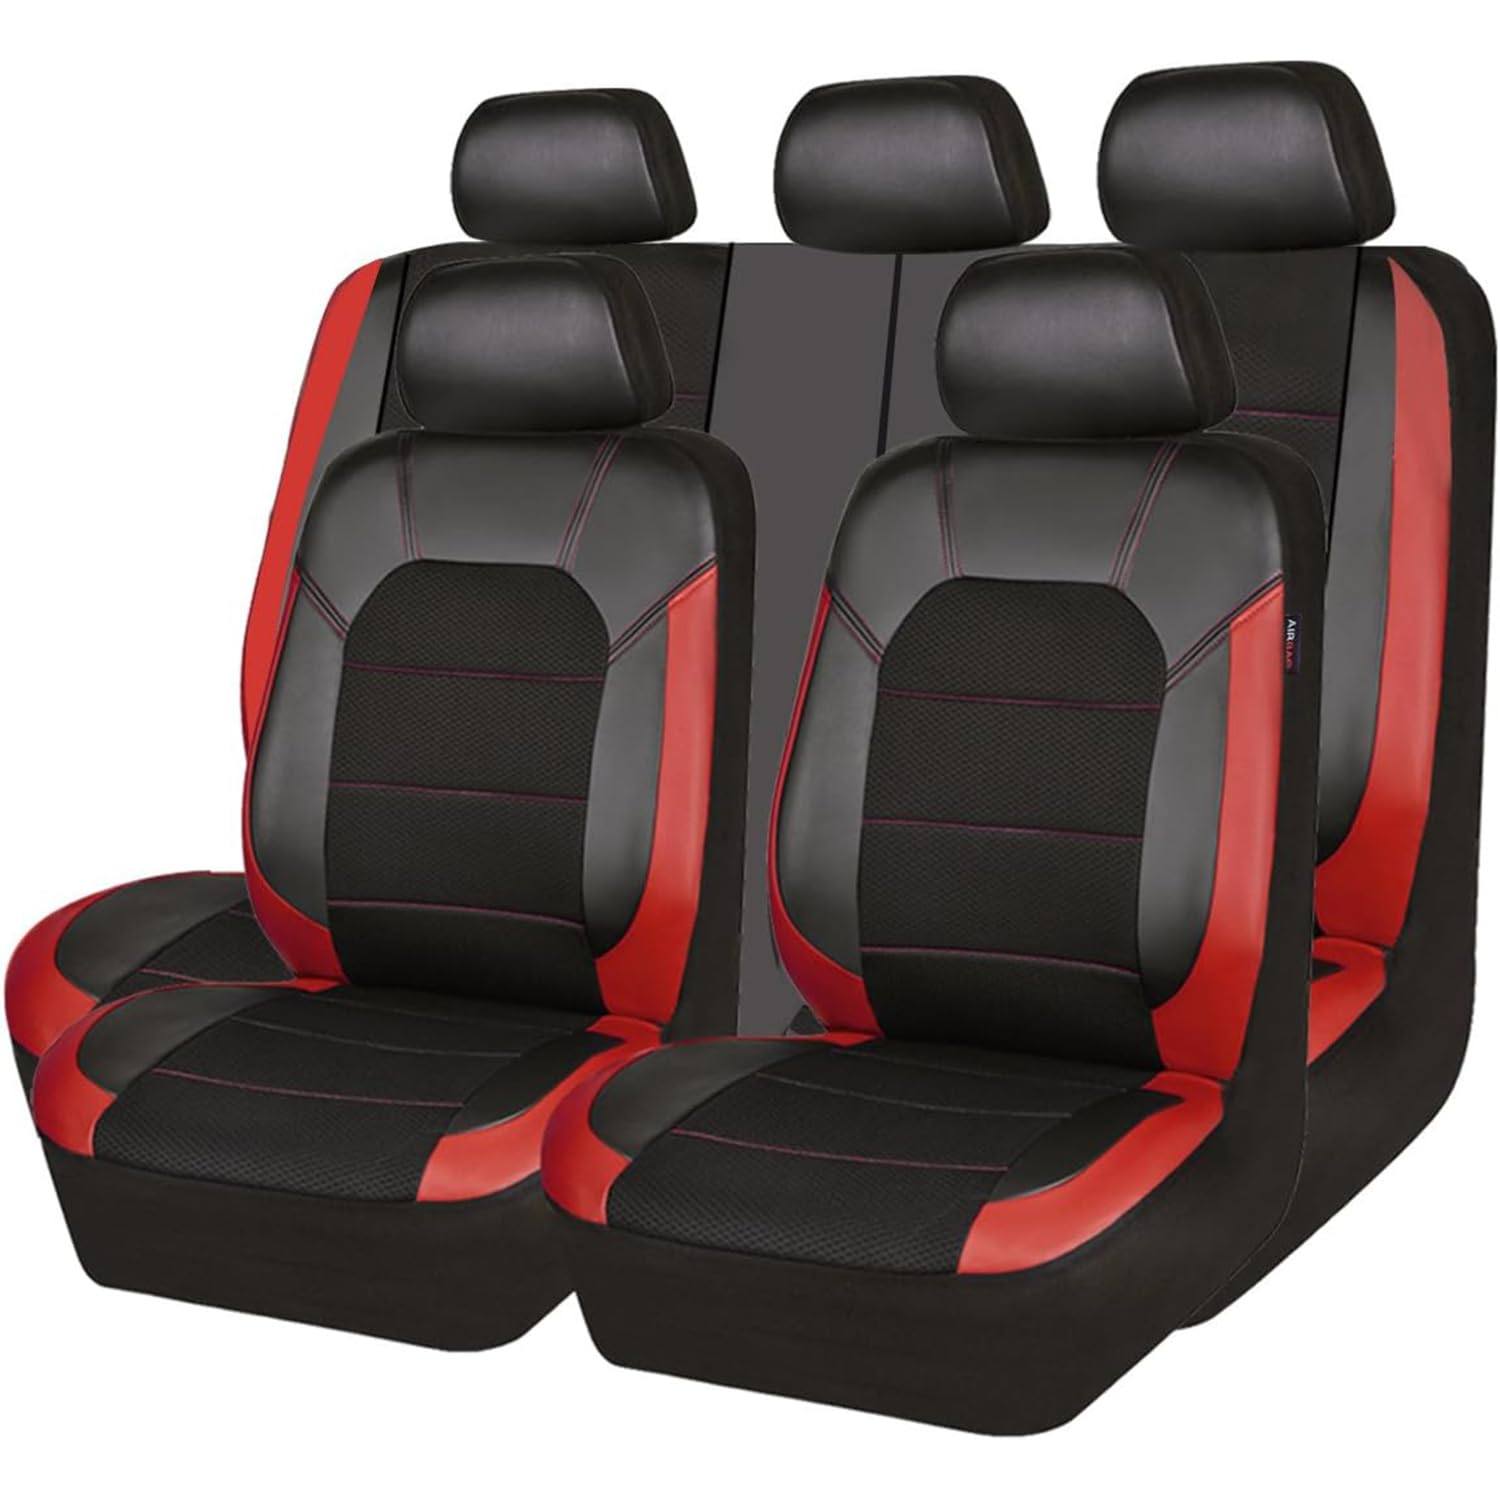 EXBERT Auto-Sitzbezug für Mercedes Benz M Class ML W166 W164 W163 SUV ML 250 / ML 300 / ML 350 / ML 400 / ML 450, 9-teiliges Set Sitzbezug Komplett-Set, PKW-Sitzbezüge, Sitzschoner 5 Sitzplätze,D von EXBERT